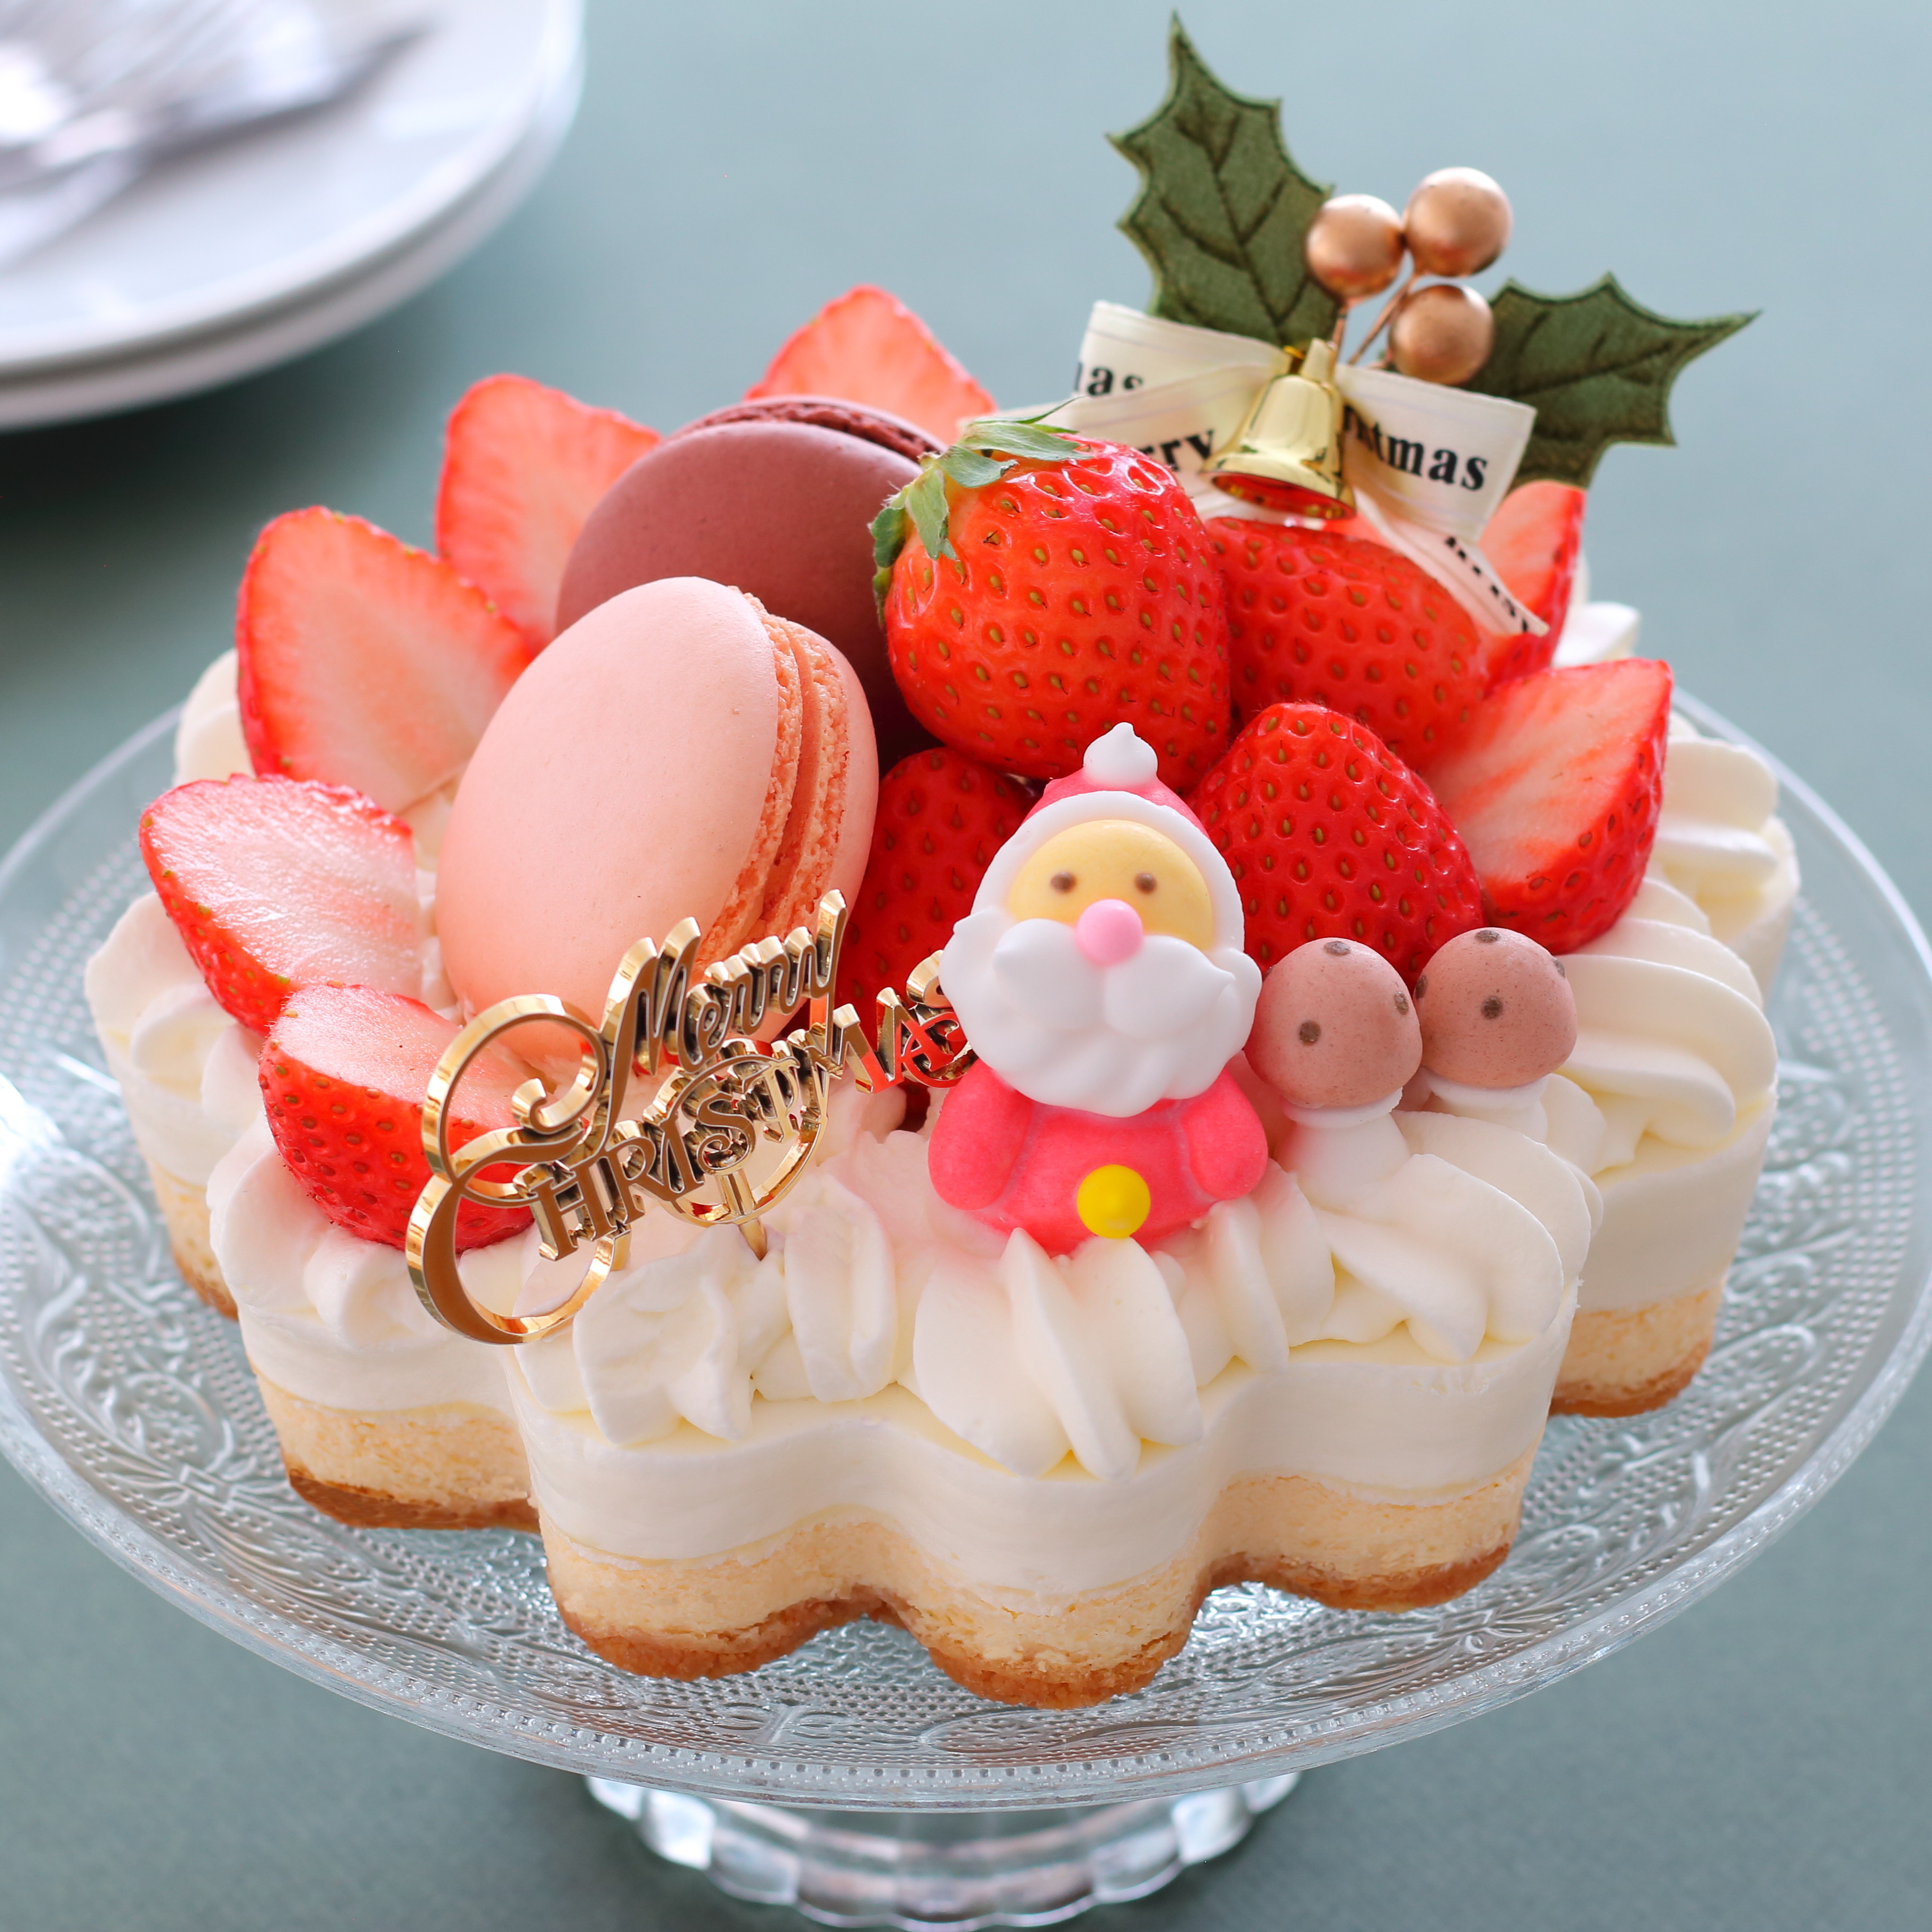 クリスマス特別レッスン 未完成ケーキ を使って デコレーション 写真撮影教室を開催します Marimo Cafe 可愛くて美味しいお菓子レシピ Powered By ライブドアブログ